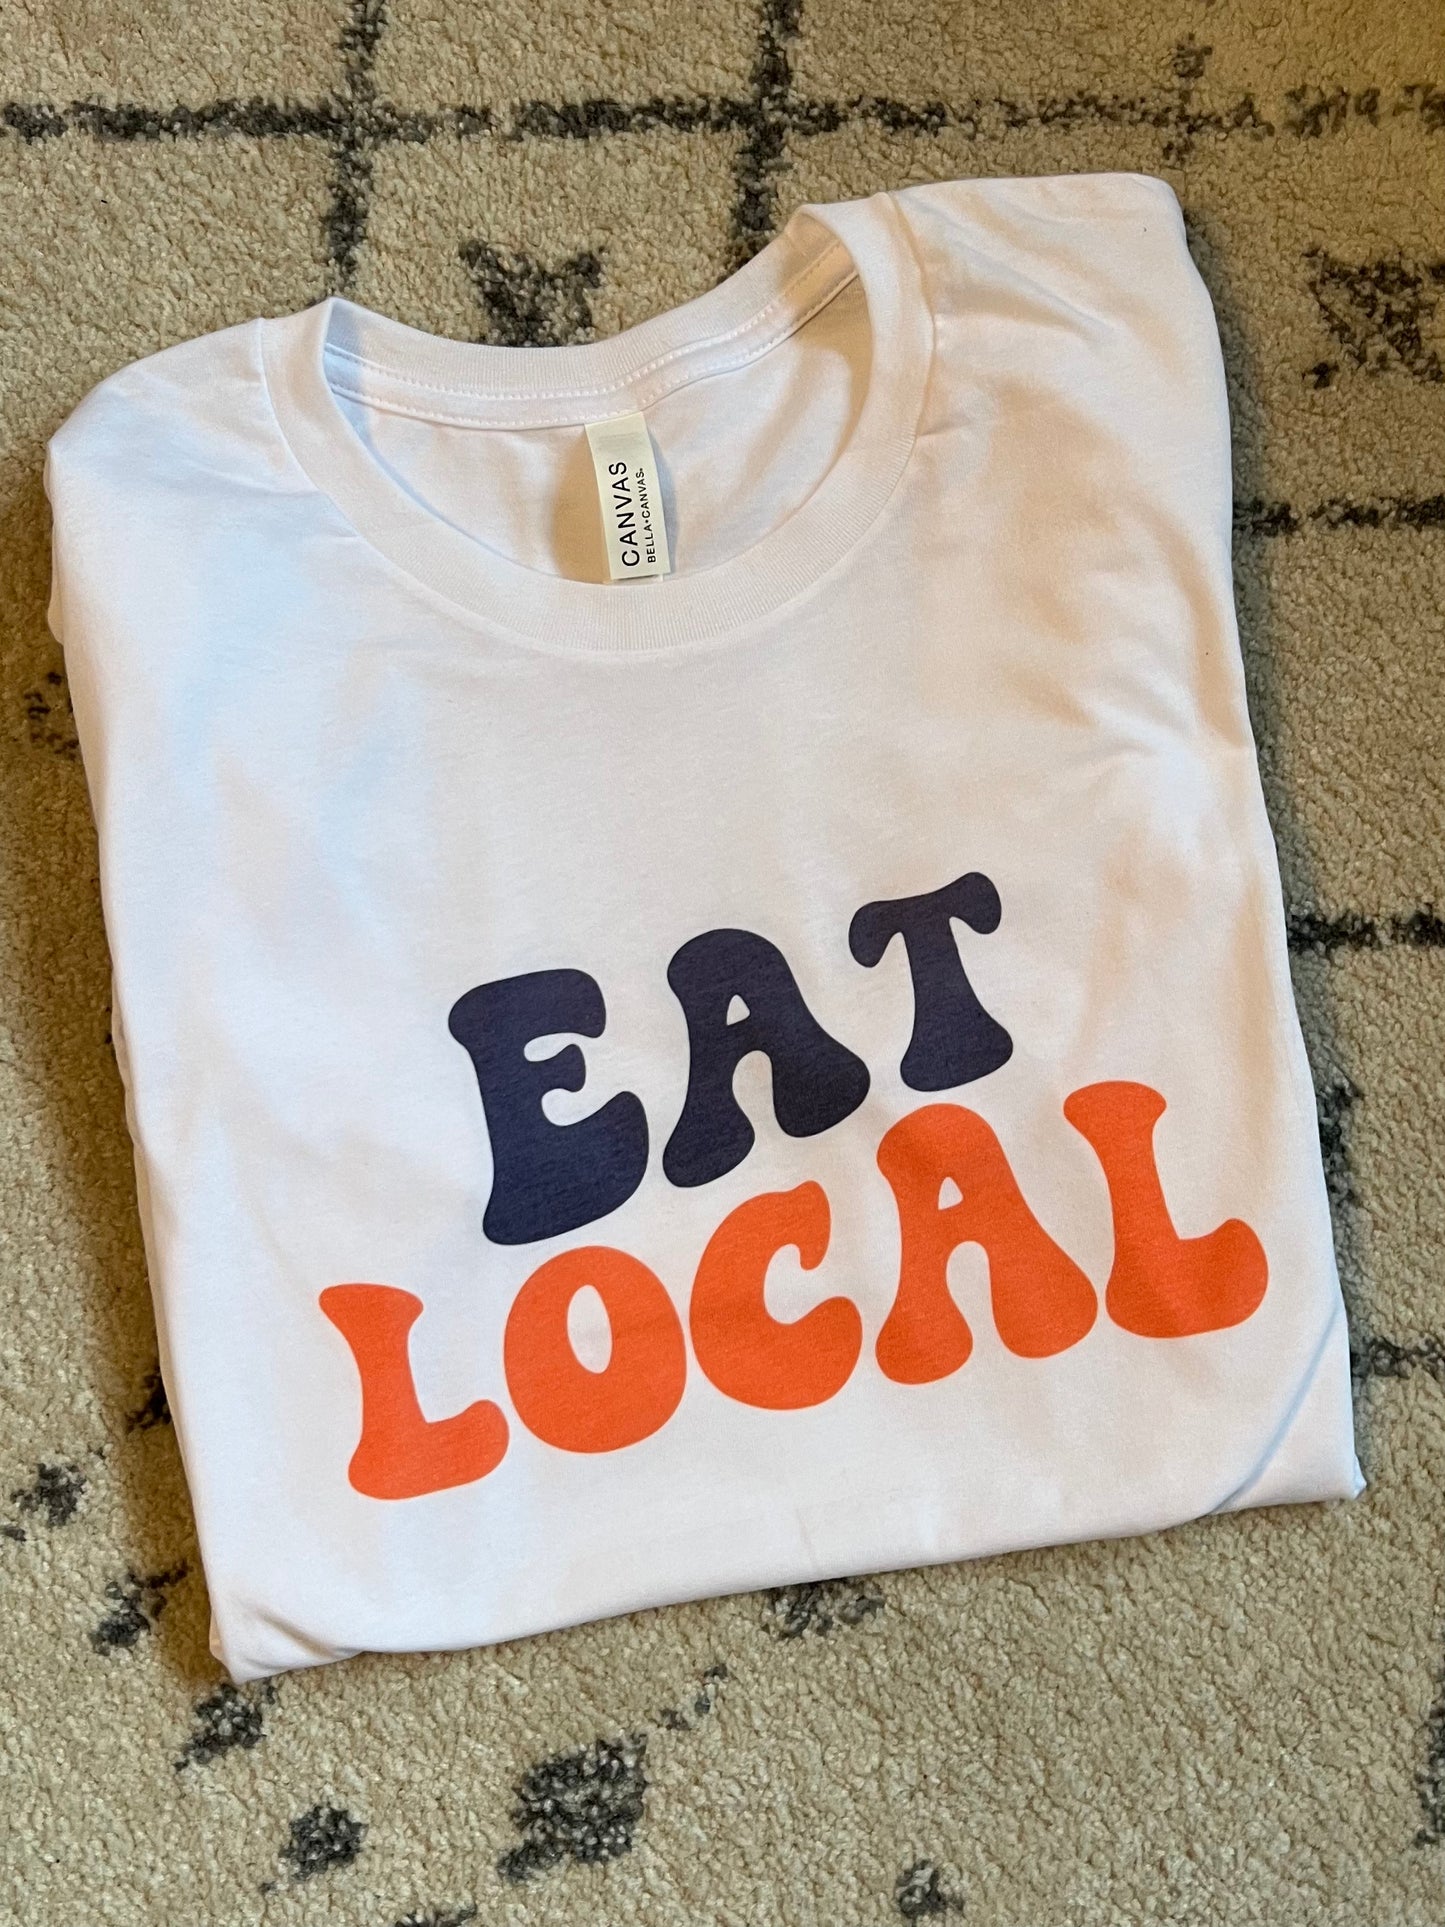 Eat Local Tshirt